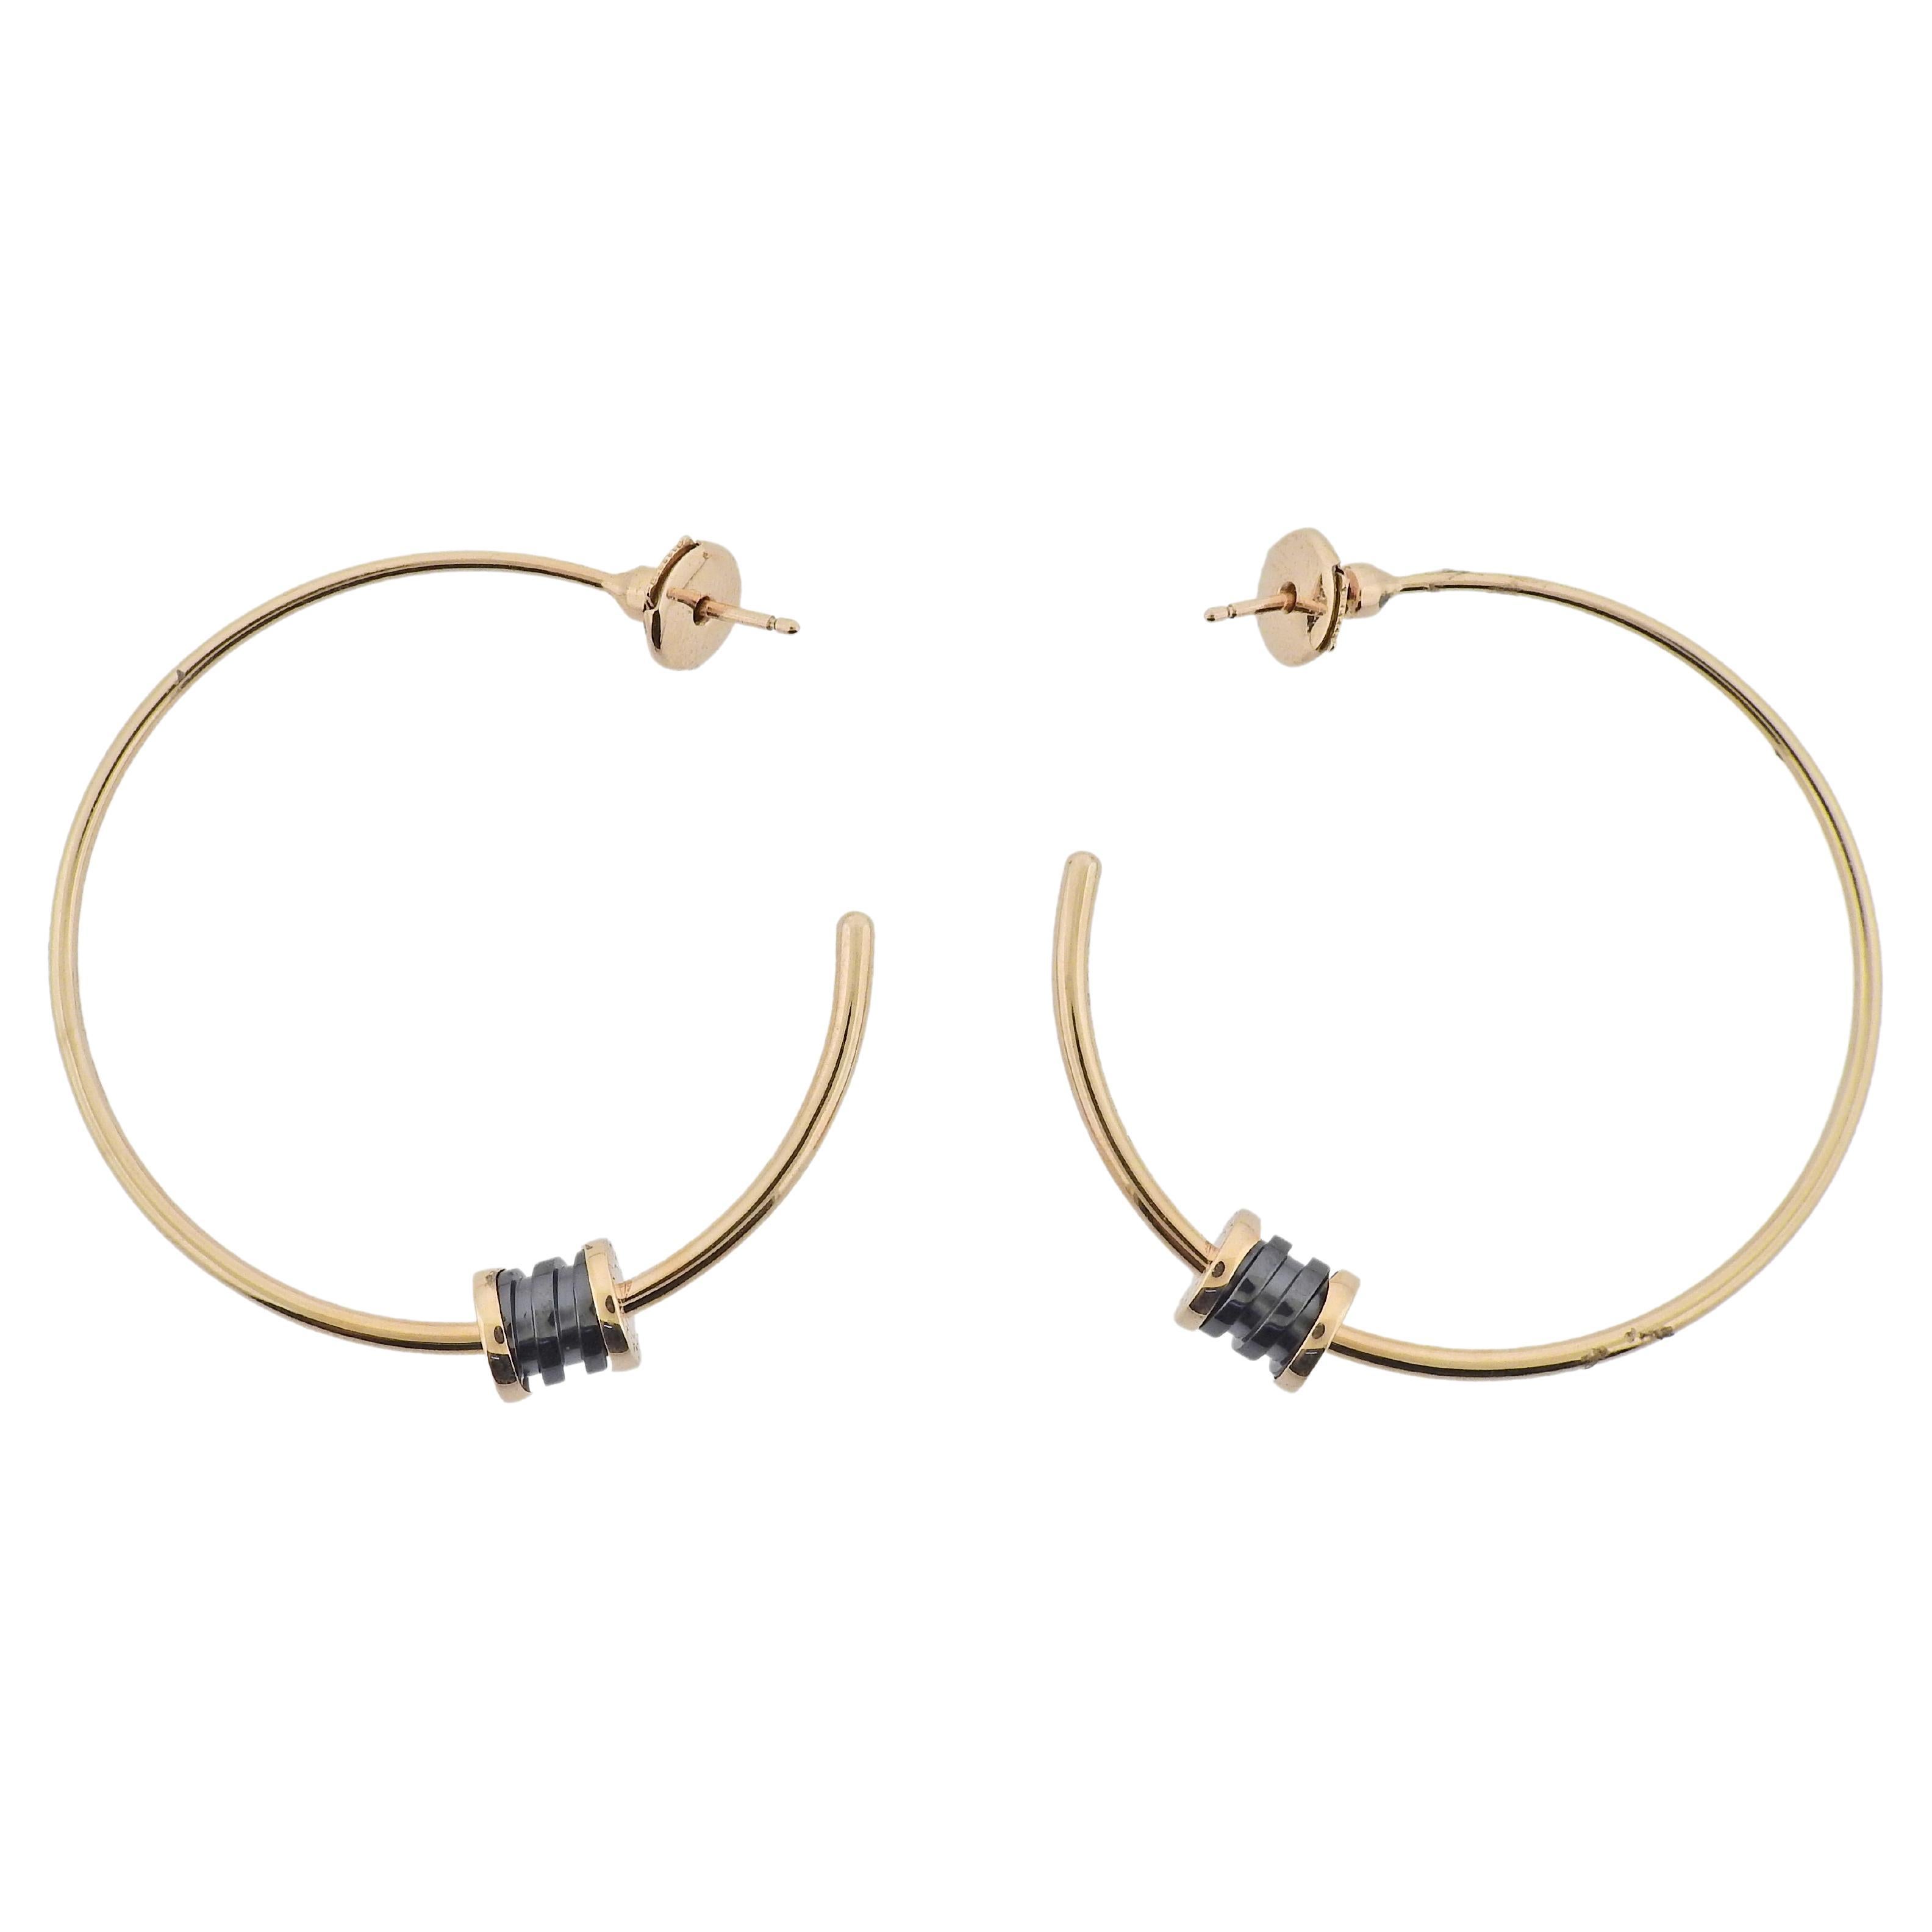 Rose gold BVLGARI BVLGARI Earrings with 0.38 ct Diamonds | Bulgari Official  Store